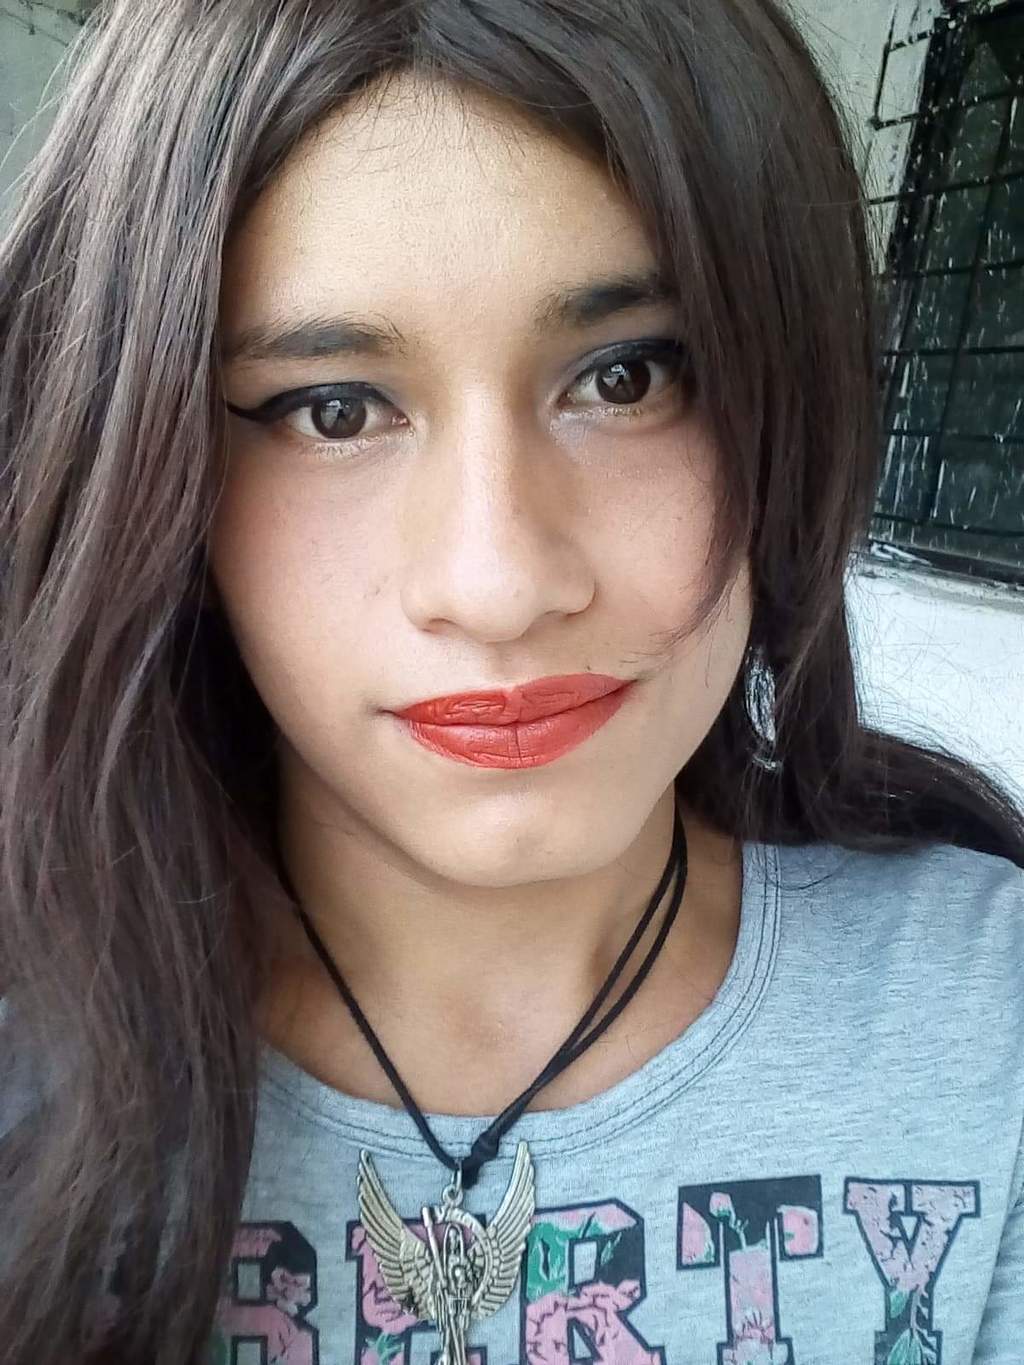 Benjamín buscará el cambio de Identidad de Género. Actualmente usa el nombre de Vanessa Yaritza. (CORTESÍA)